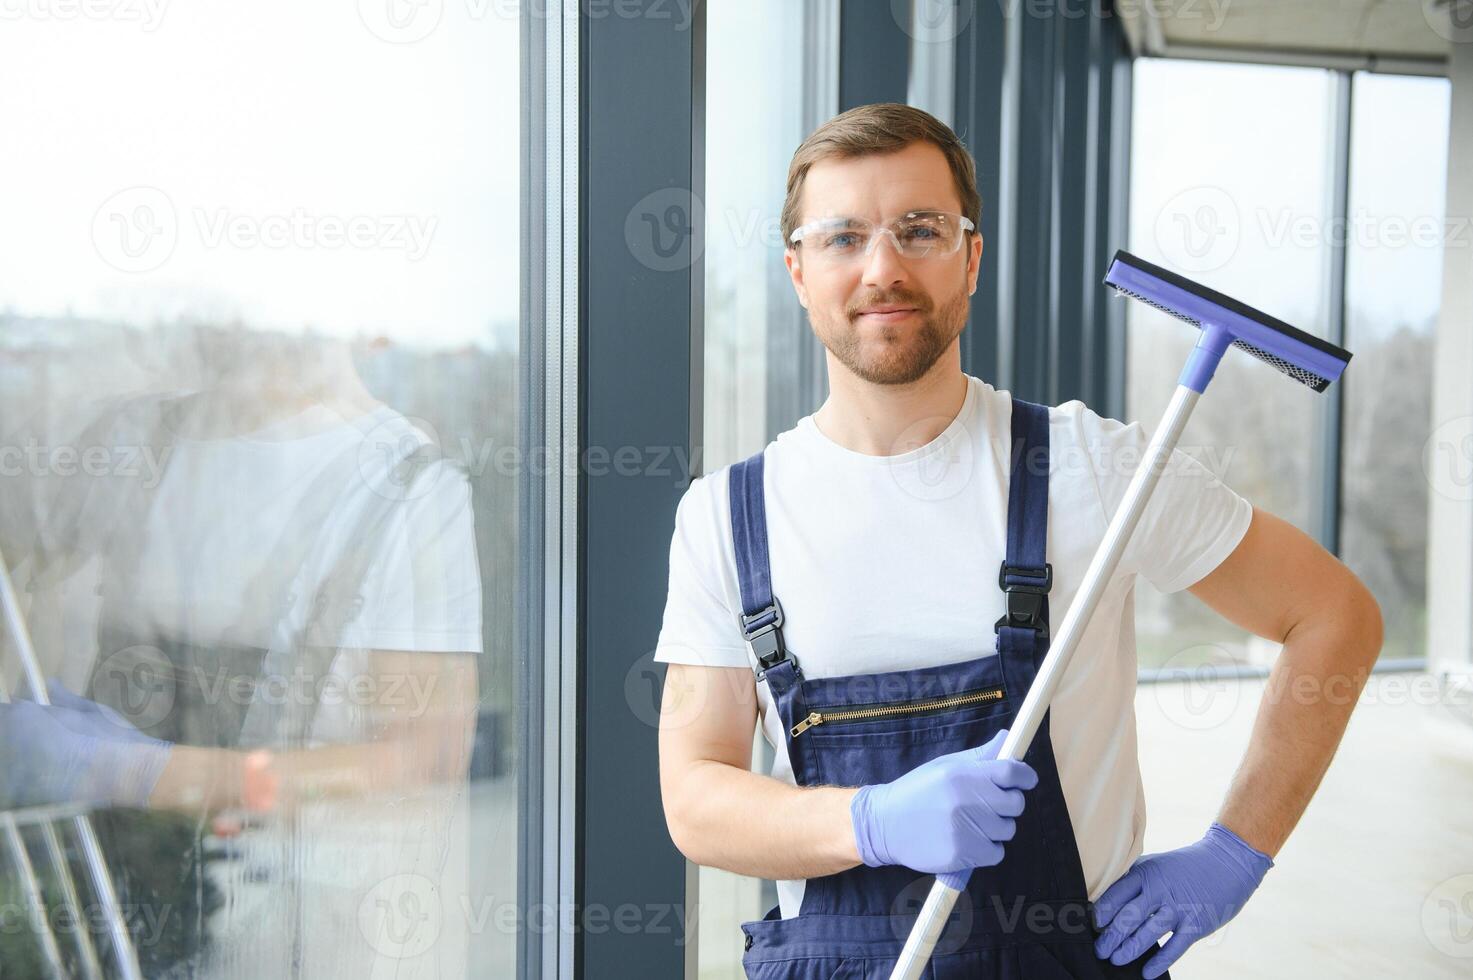 un empleado de un profesional limpieza Servicio lavados el vaso de el ventanas de el edificio. escaparate limpieza para tiendas y negocios foto